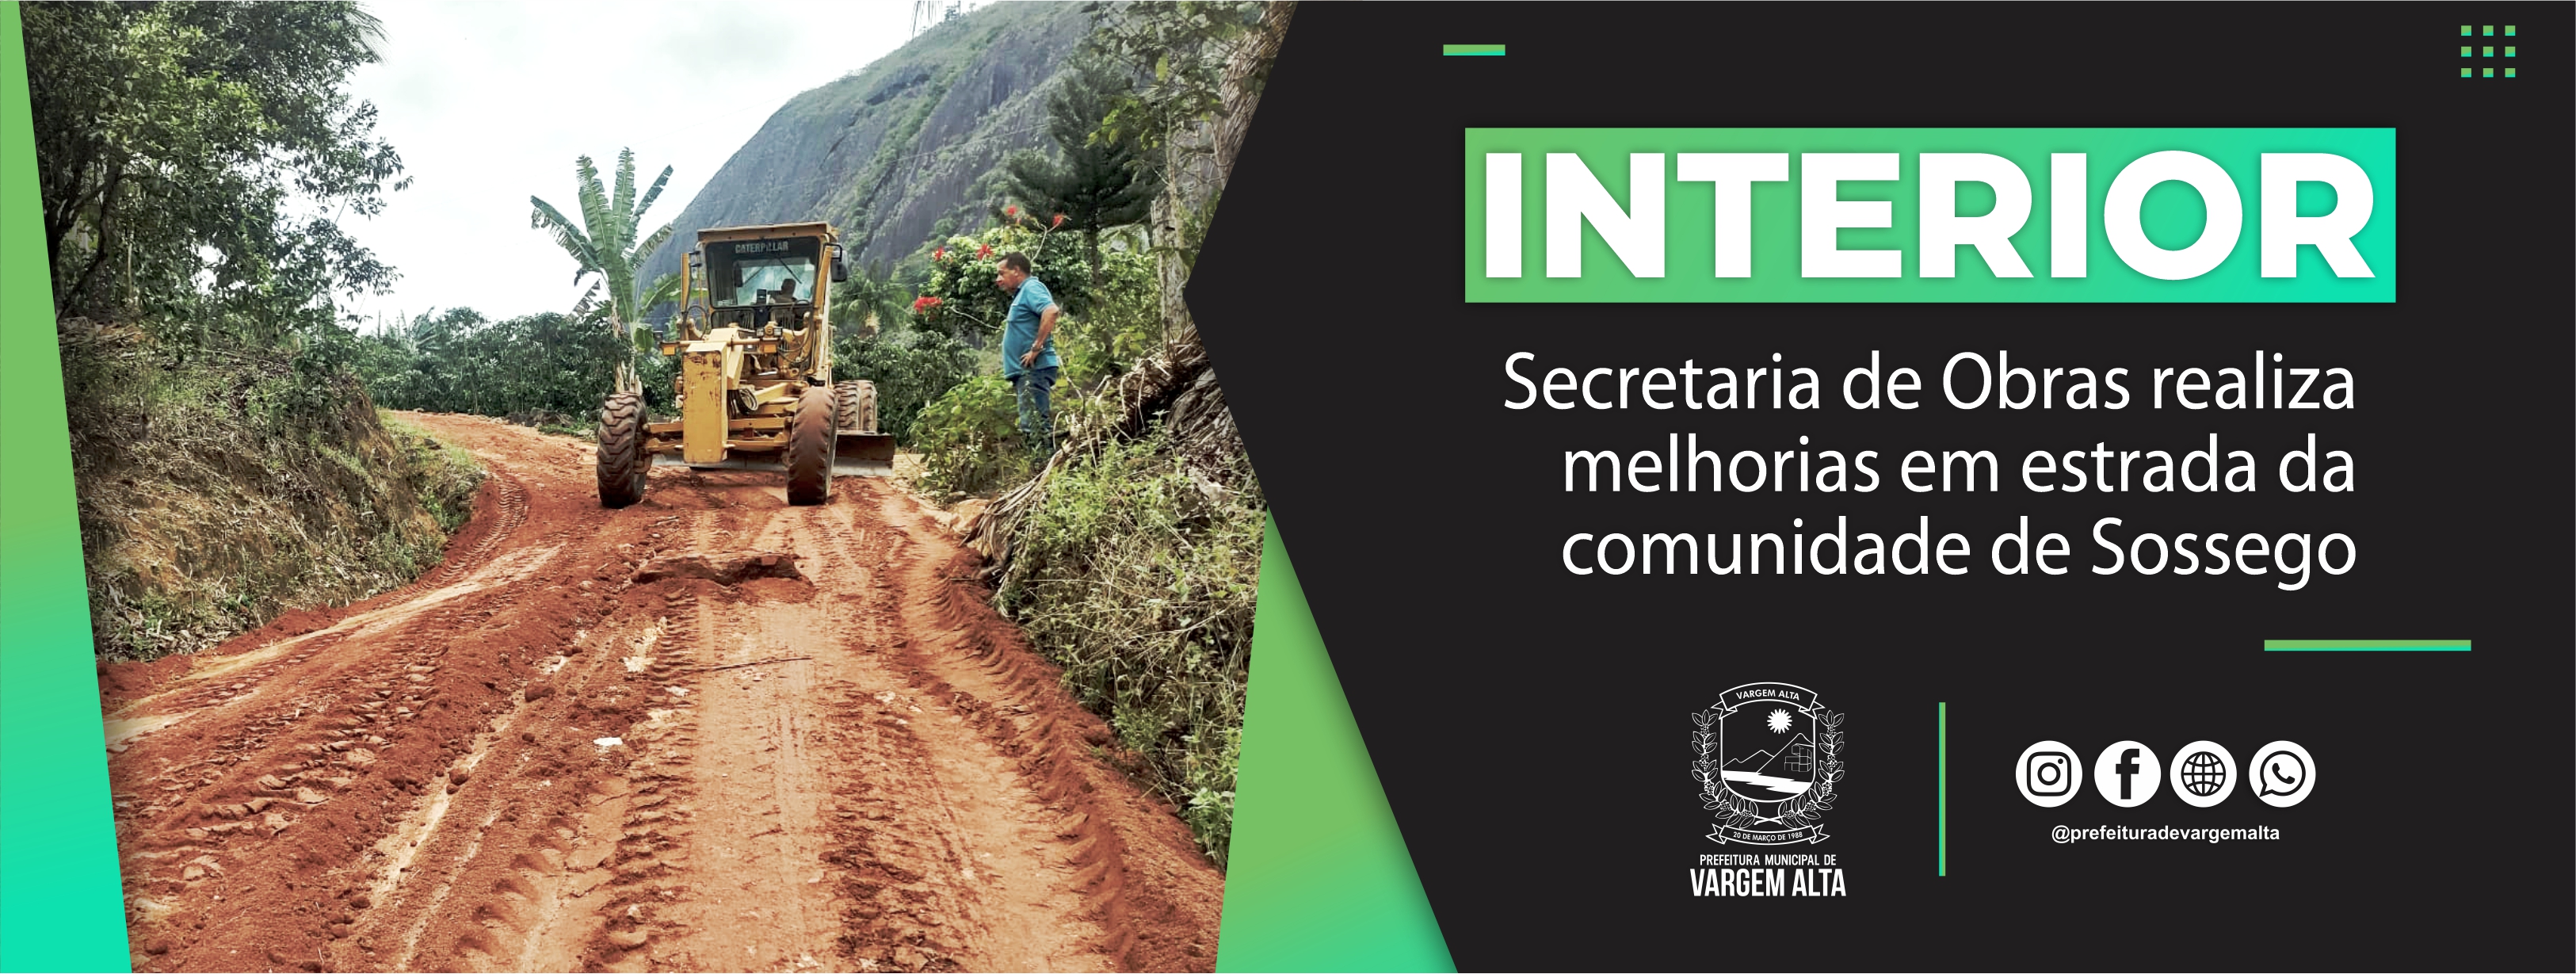 Secretaria de Obras realiza melhorias em estrada da comunidade de Sossego